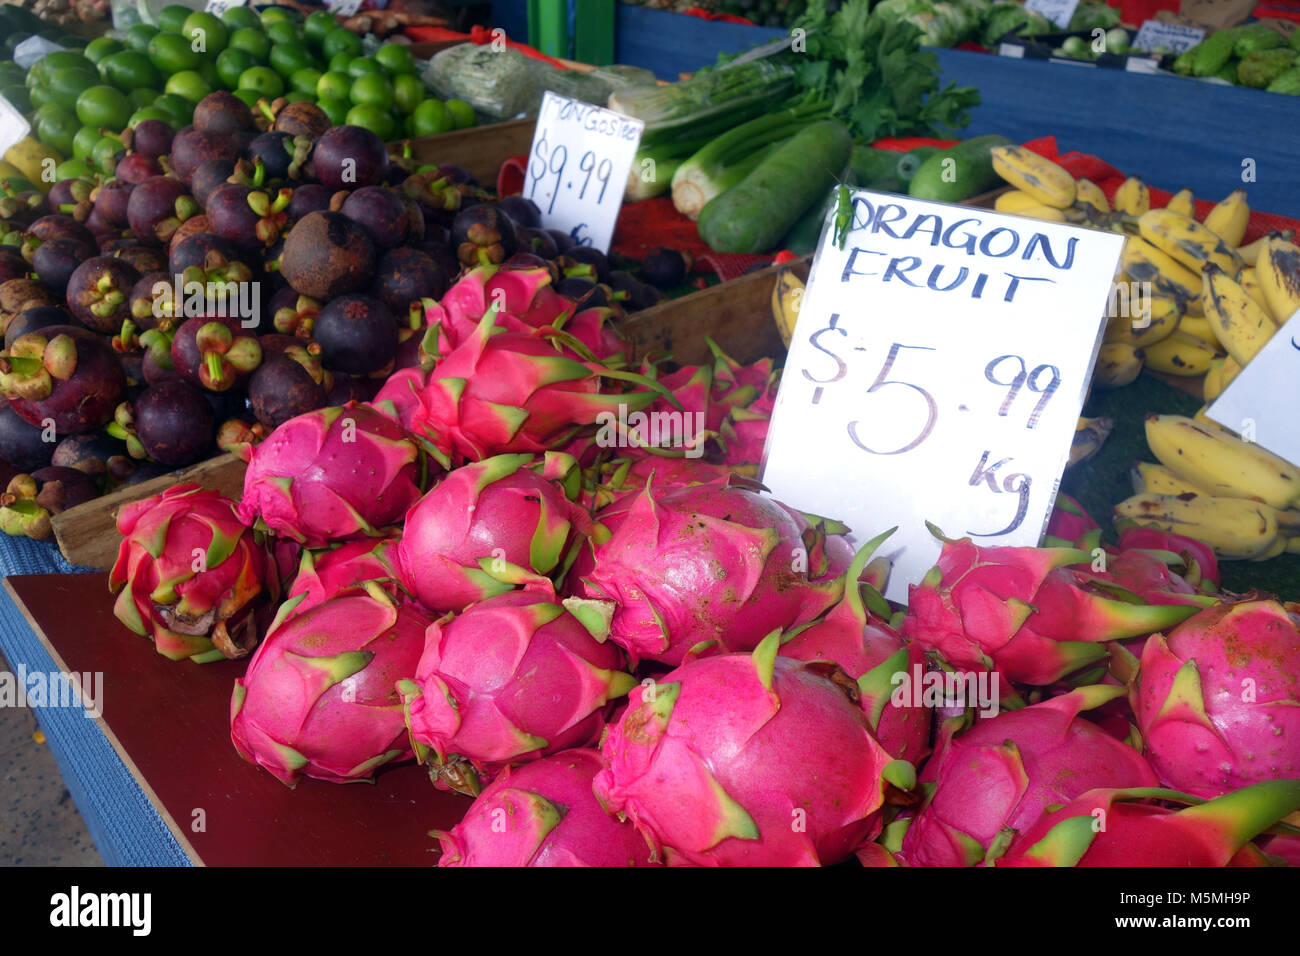 Drachenfrucht, mangostanfrüchte und andere tropische Früchte zum Verkauf an Rusty's Markets, Cairns, Queensland, Australien. Keine PR Stockfoto